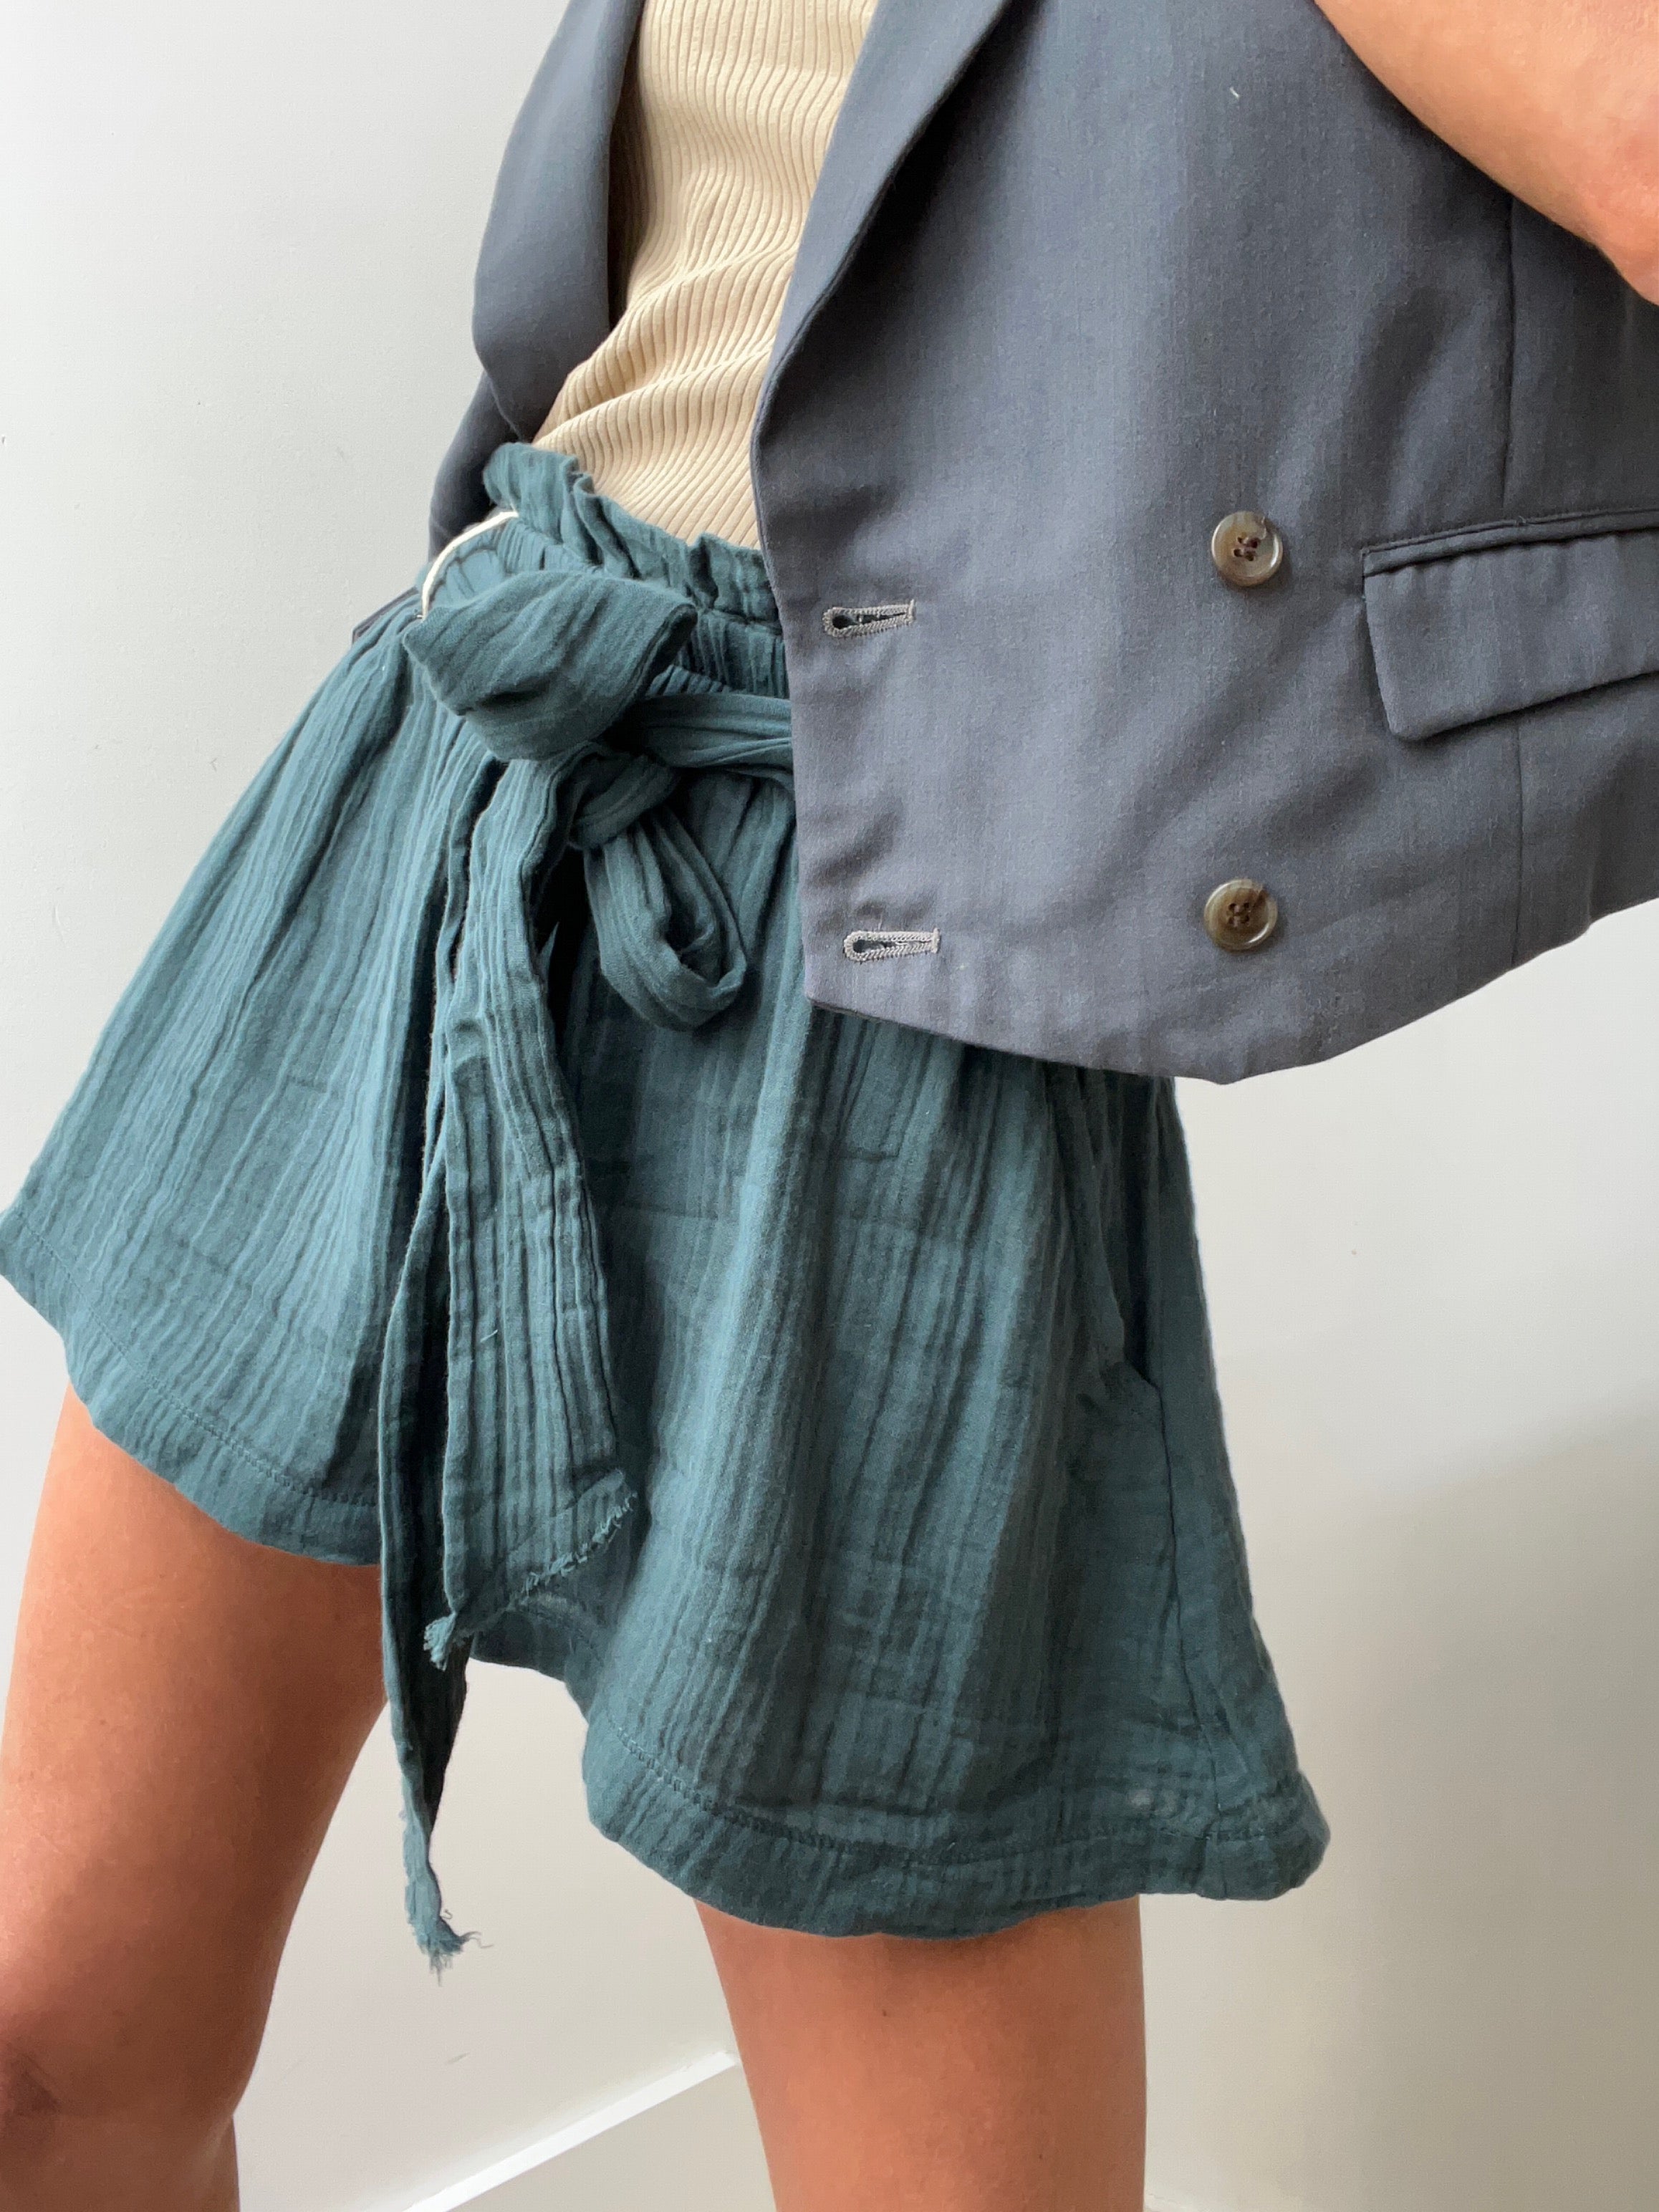 Ralph Lauren Silk-Blend Cargo Pants